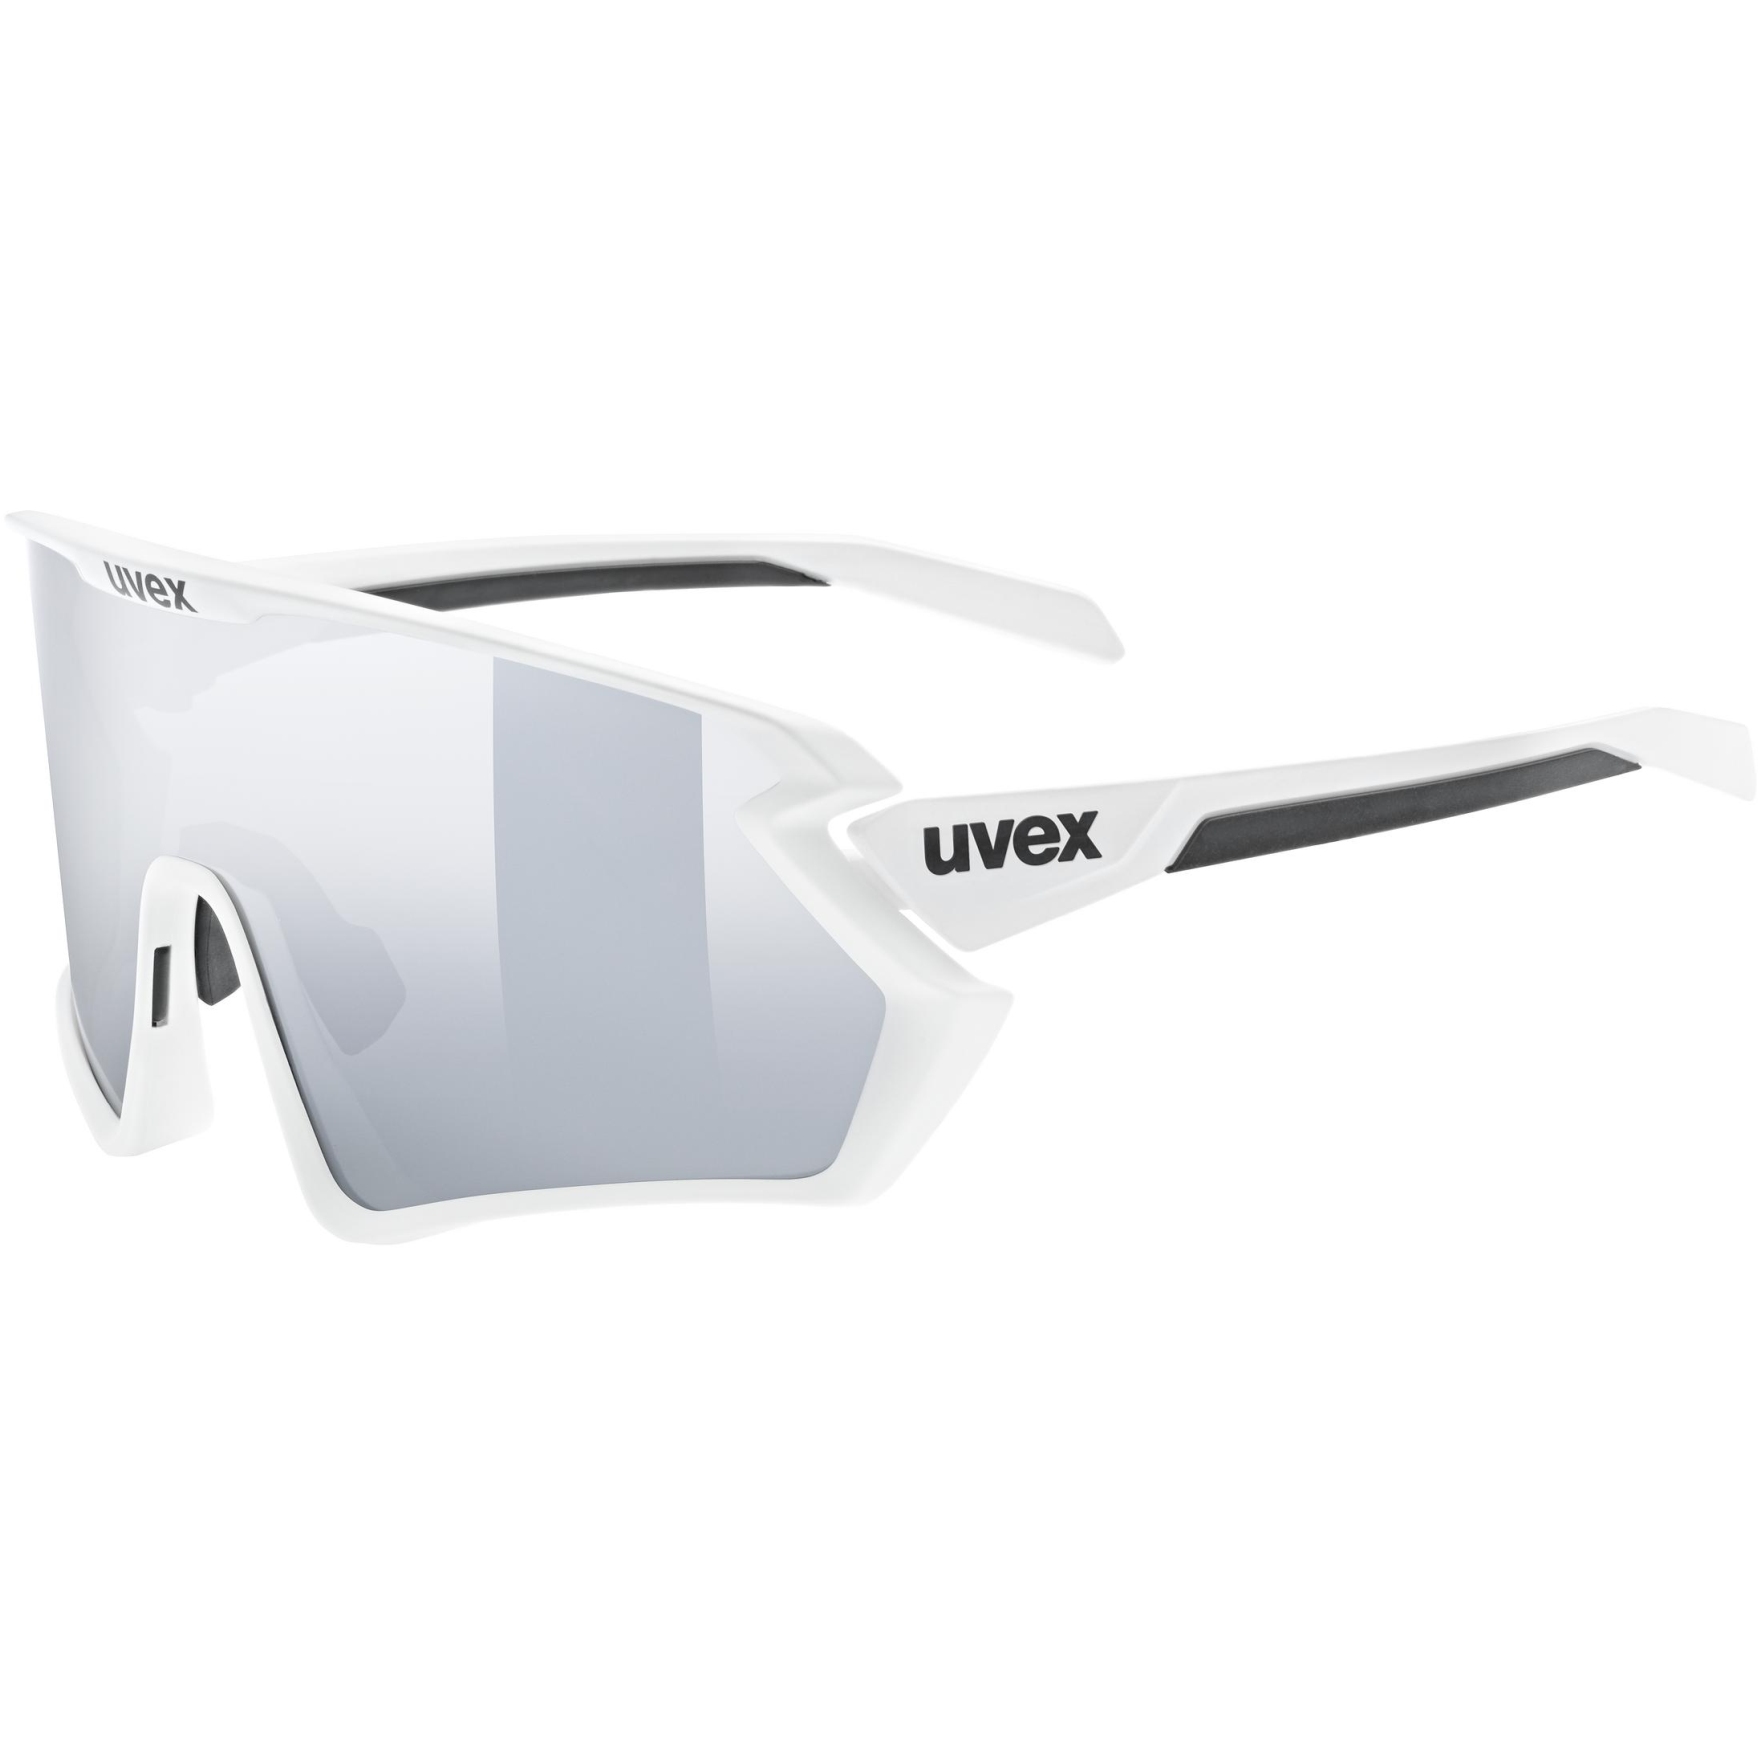 Produktbild von Uvex sportstyle 231 2.0 Set Brille - white-black matt/supravision mirror silver + clear